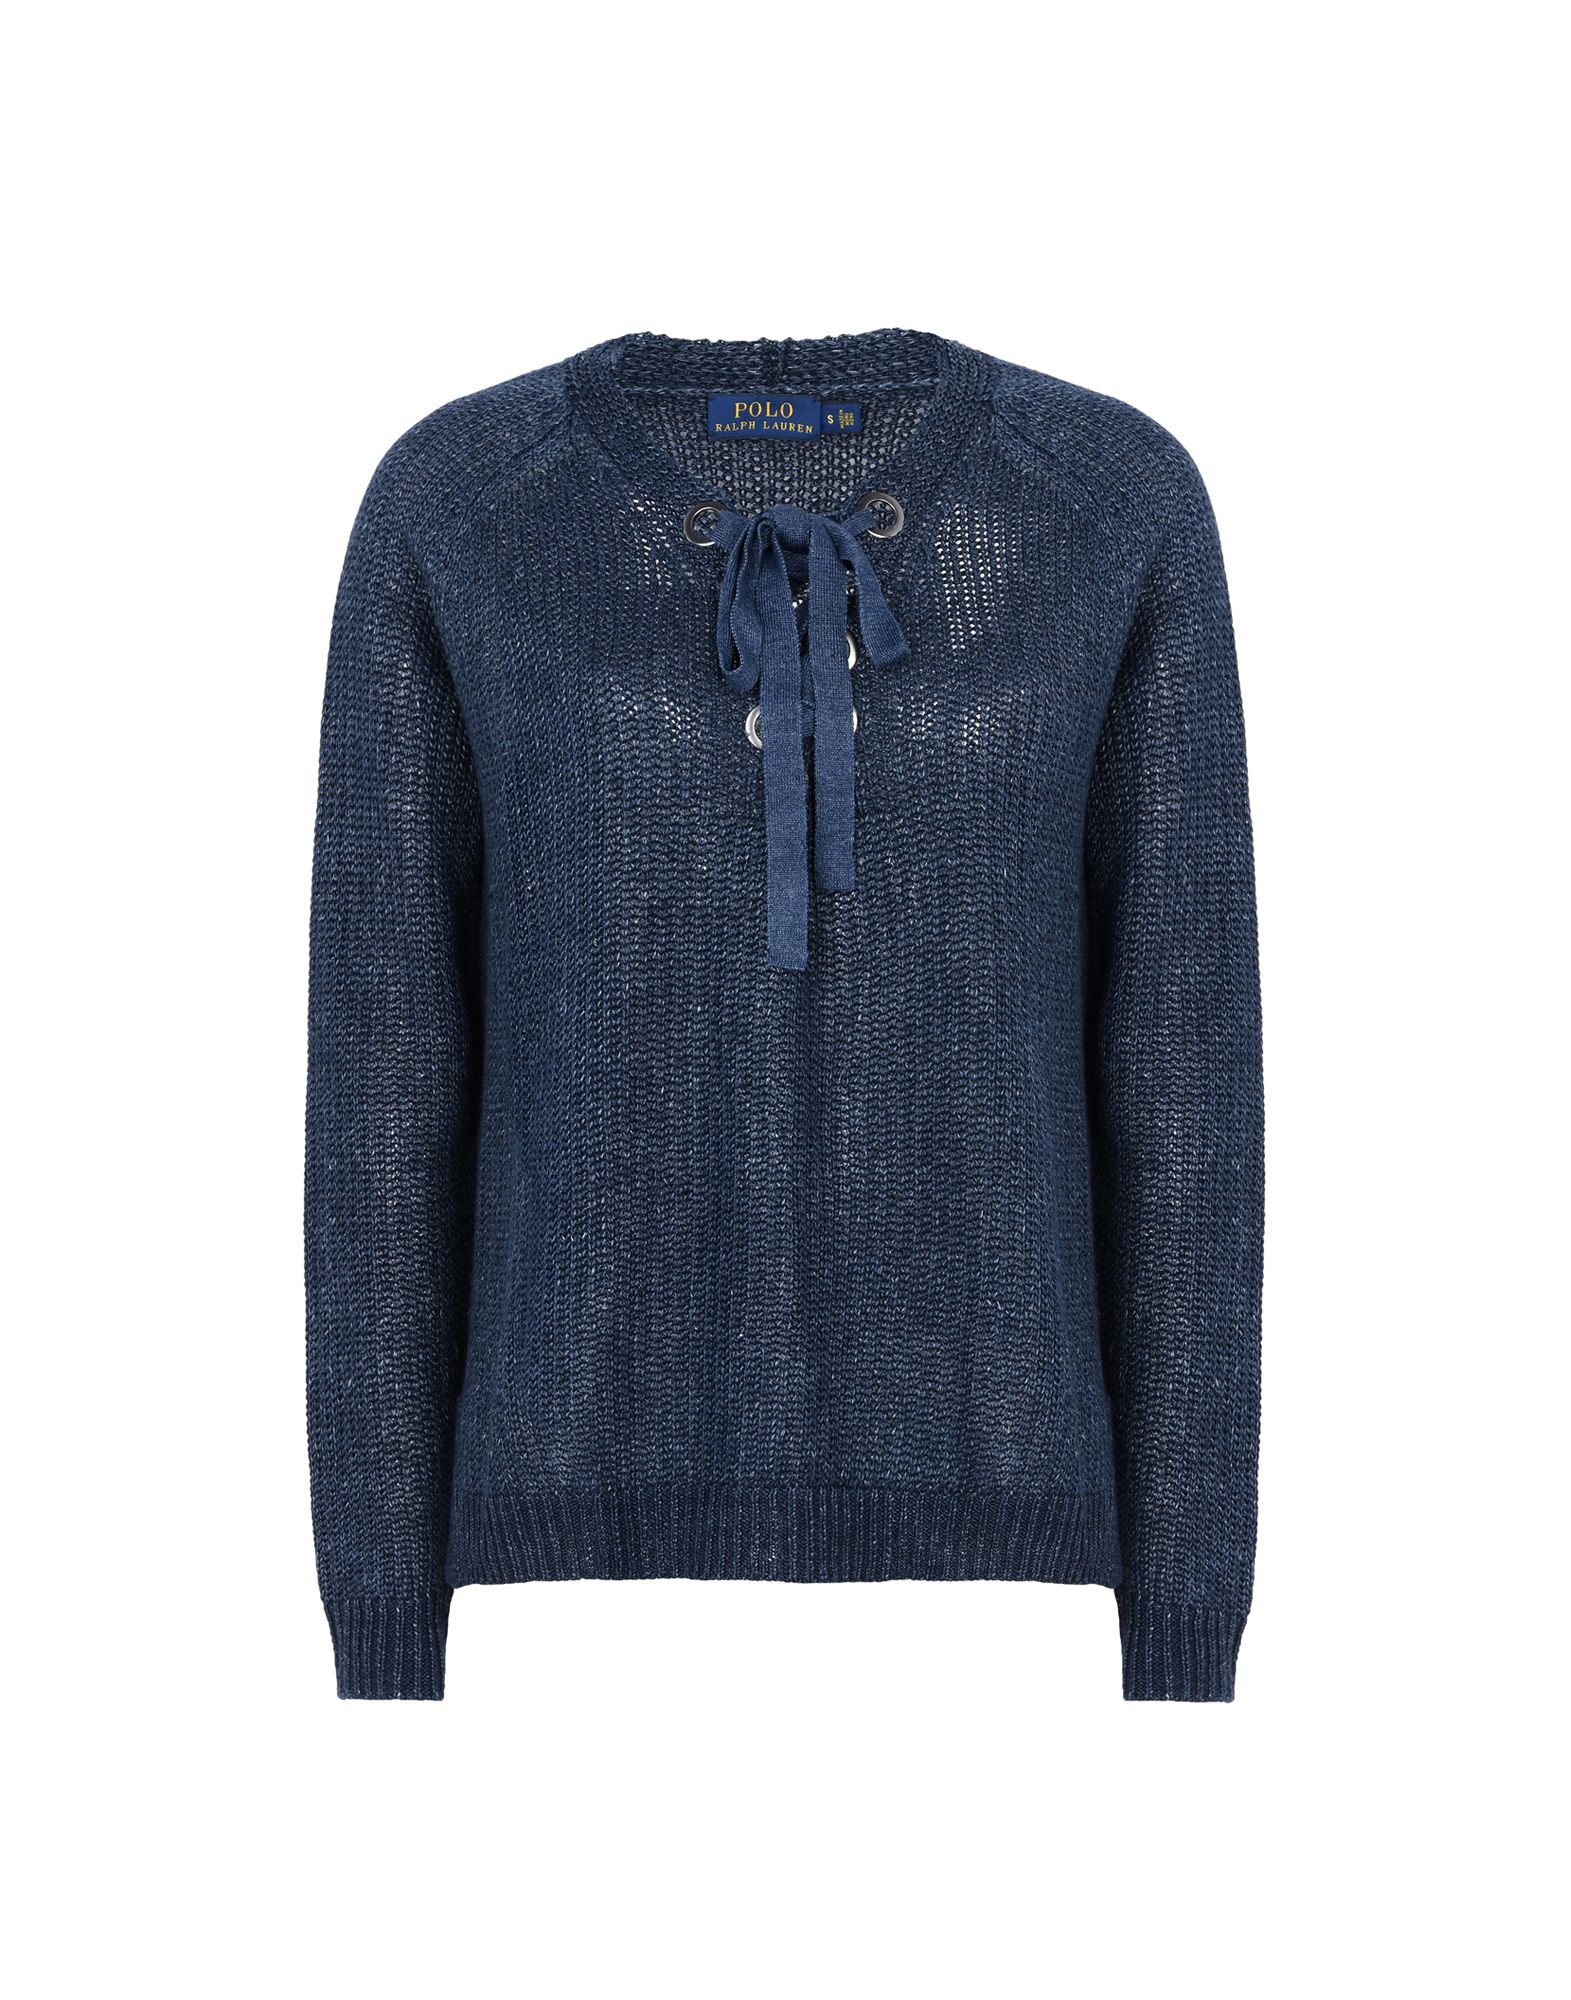 《送料無料》POLO RALPH LAUREN レディース プルオーバー ダークブルー XS 麻 100% Linen Lace Up Sweater